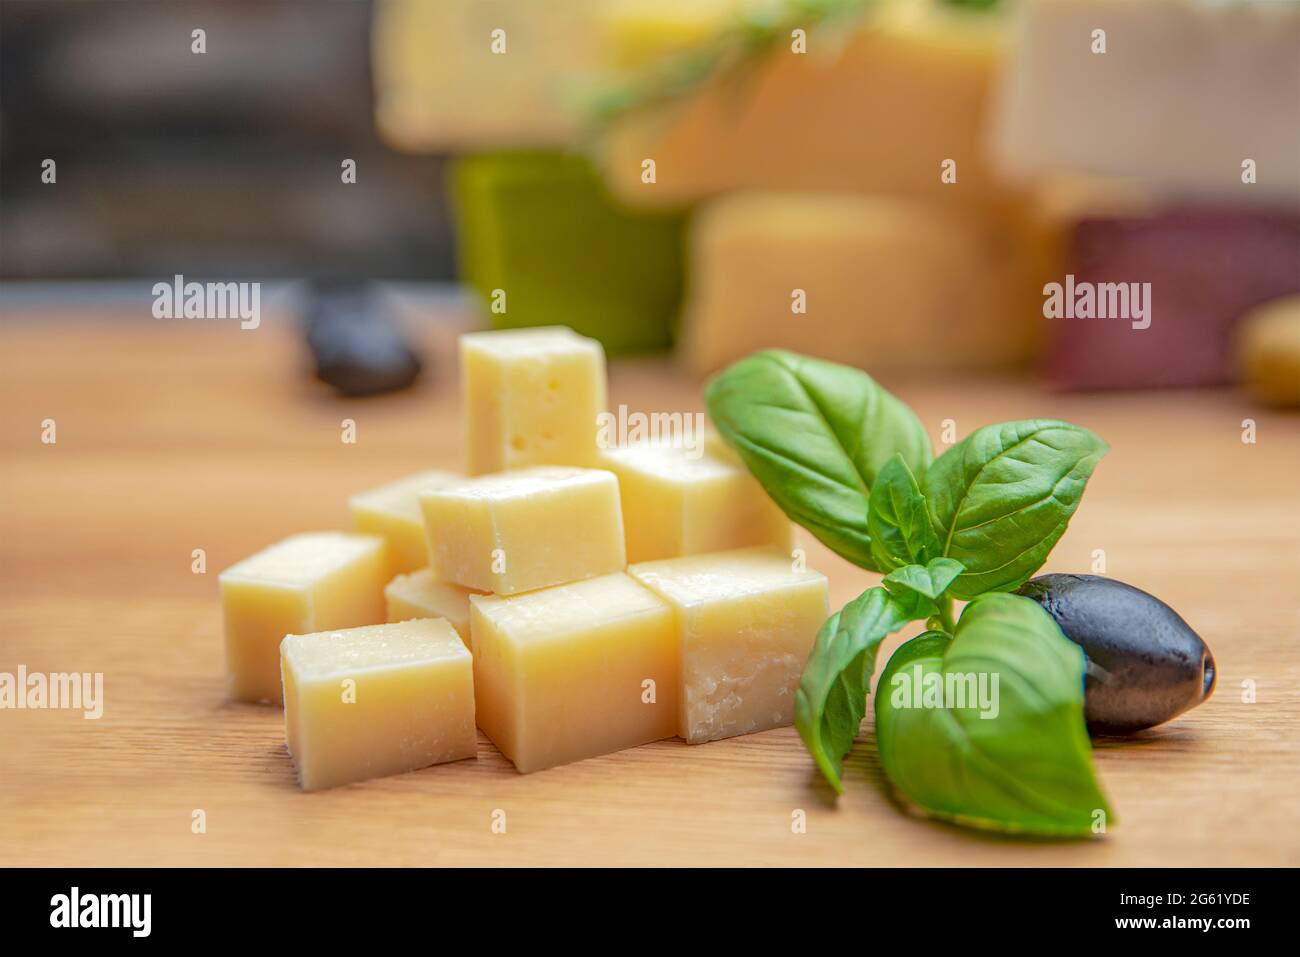 Sfondo di formaggio. Assortimento di diversi tipi di formaggio su sfondo ligneo.posto per il testo Foto Stock